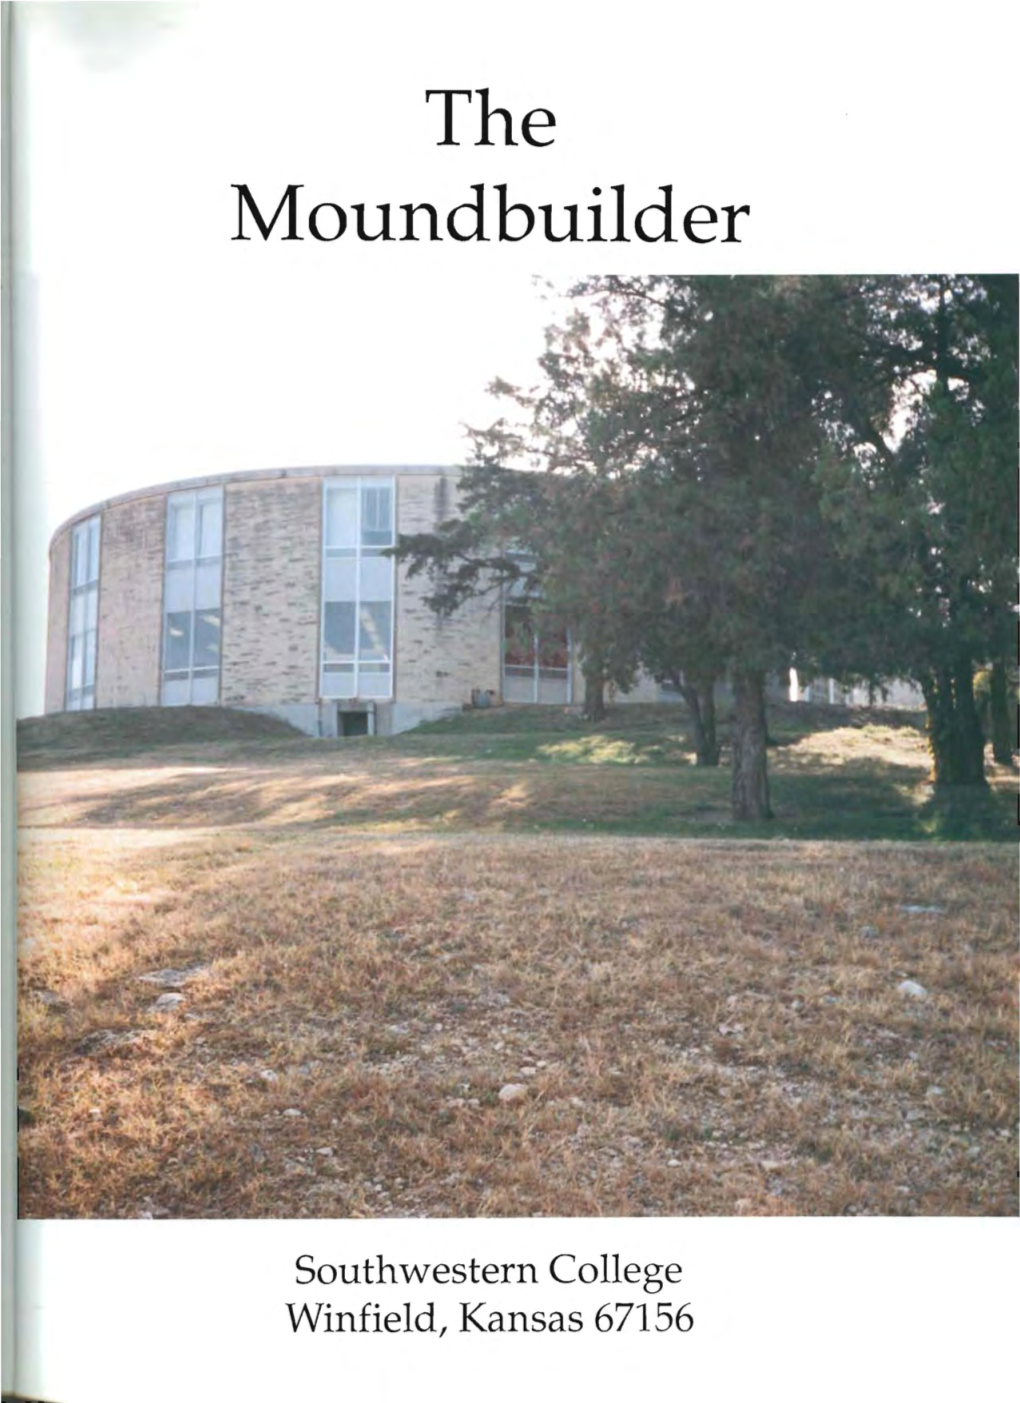 1993 Moundbuilder